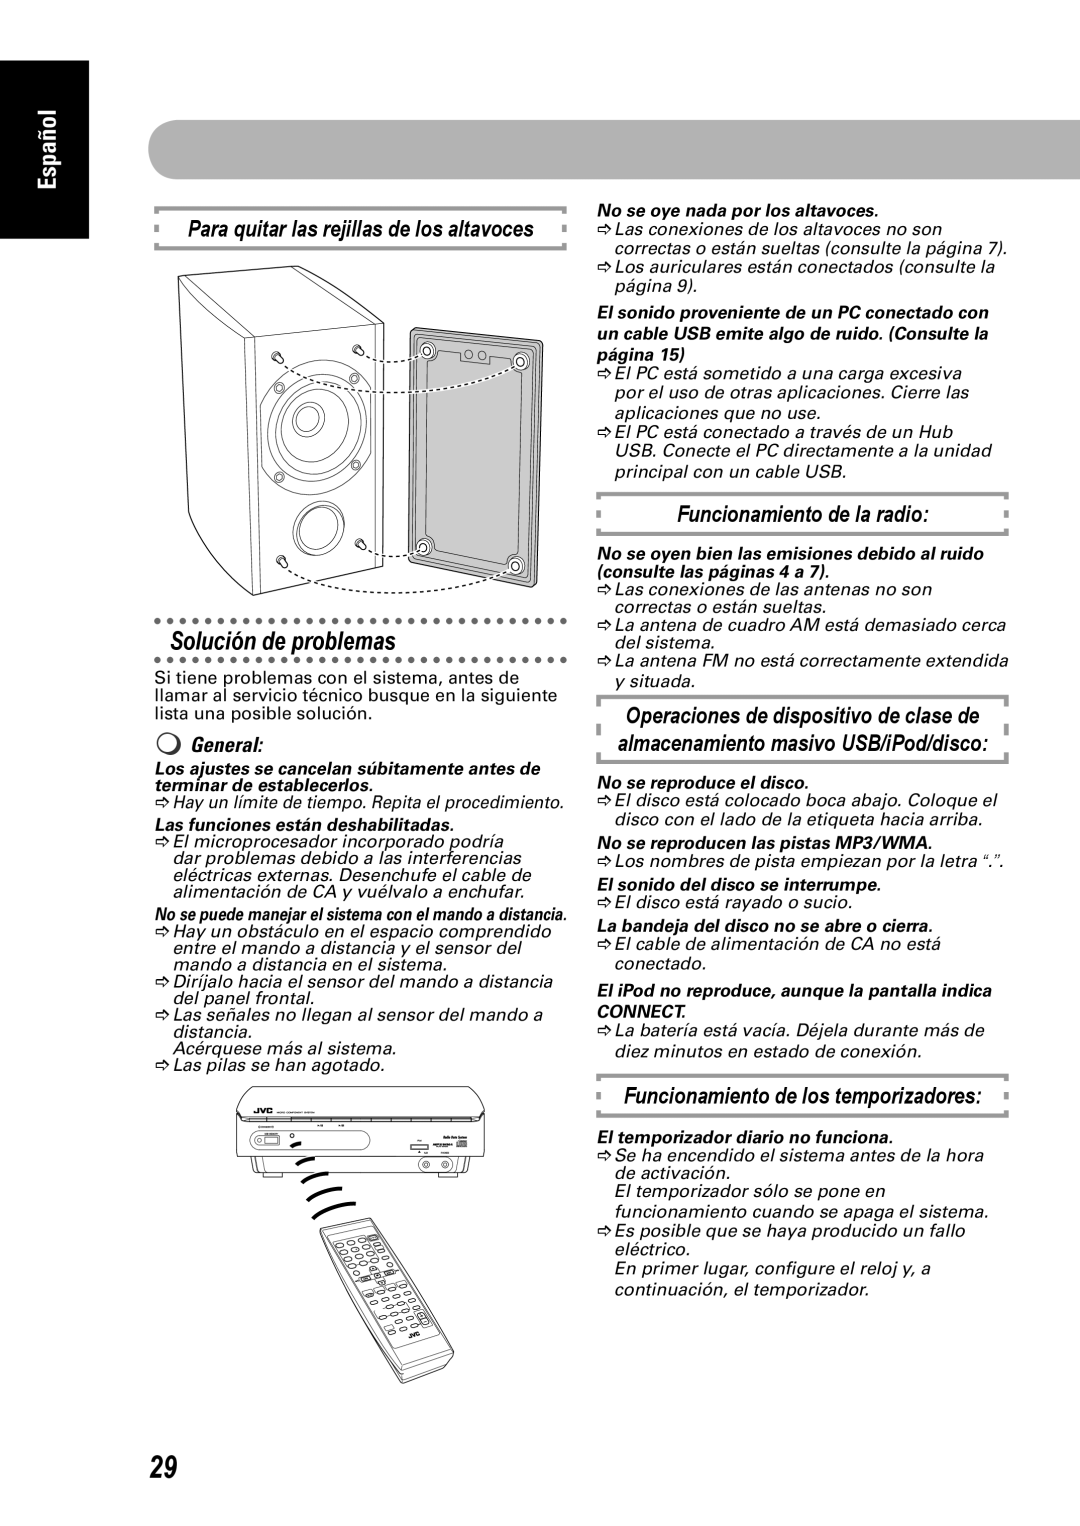 JVC CA-UXEP25 manual Solución de problemas, Para quitar las rejillas de los altavoces, Funcionamiento de la radio, General 